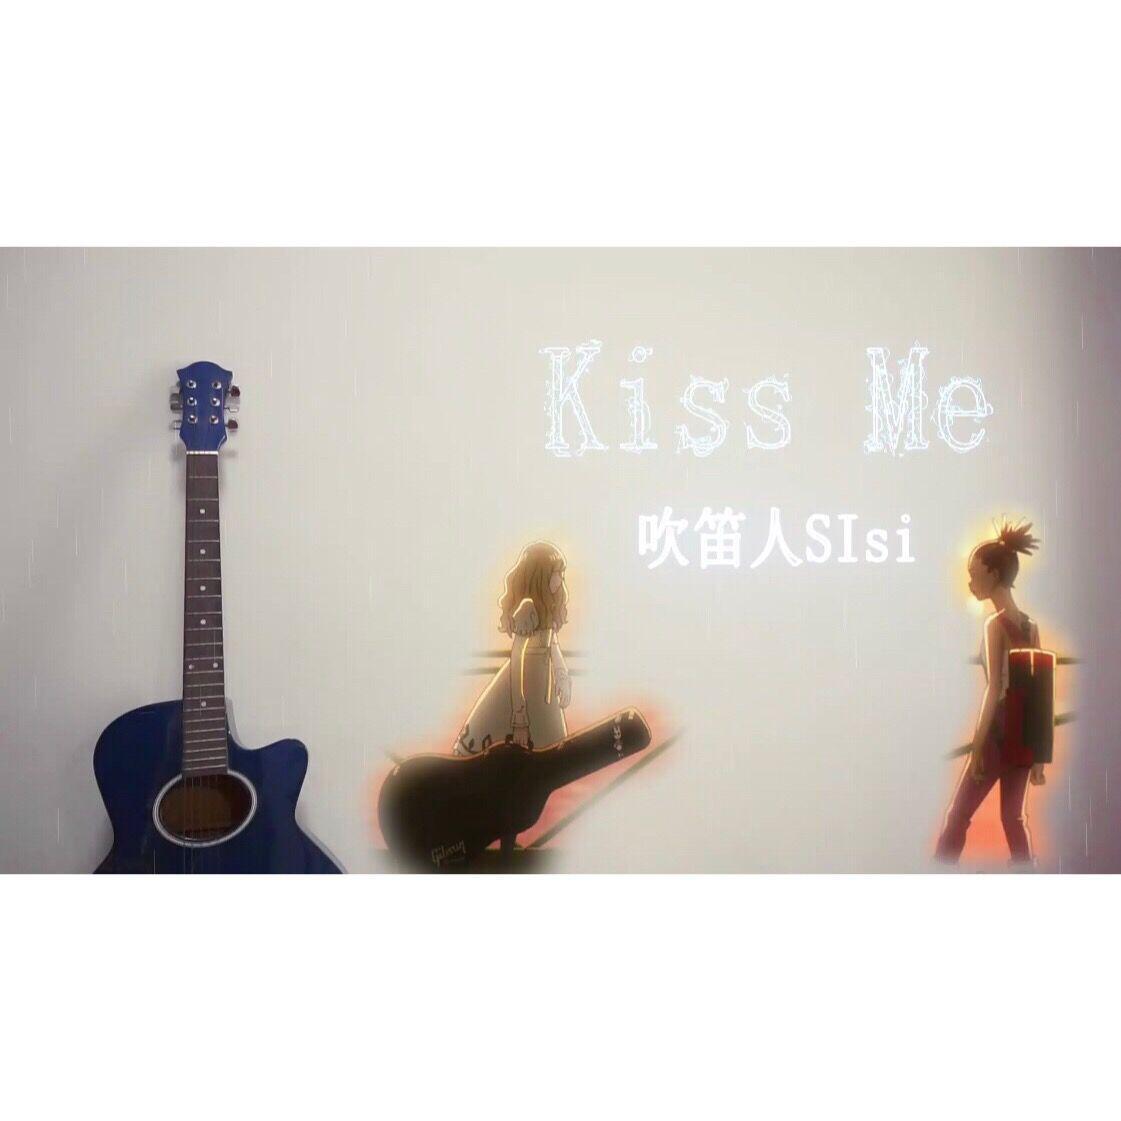 吹笛人SIsi - Kiss Me【长笛】CAROLE & TUESDAY OP（翻自 Celeina Ann & Nai Br.XX）